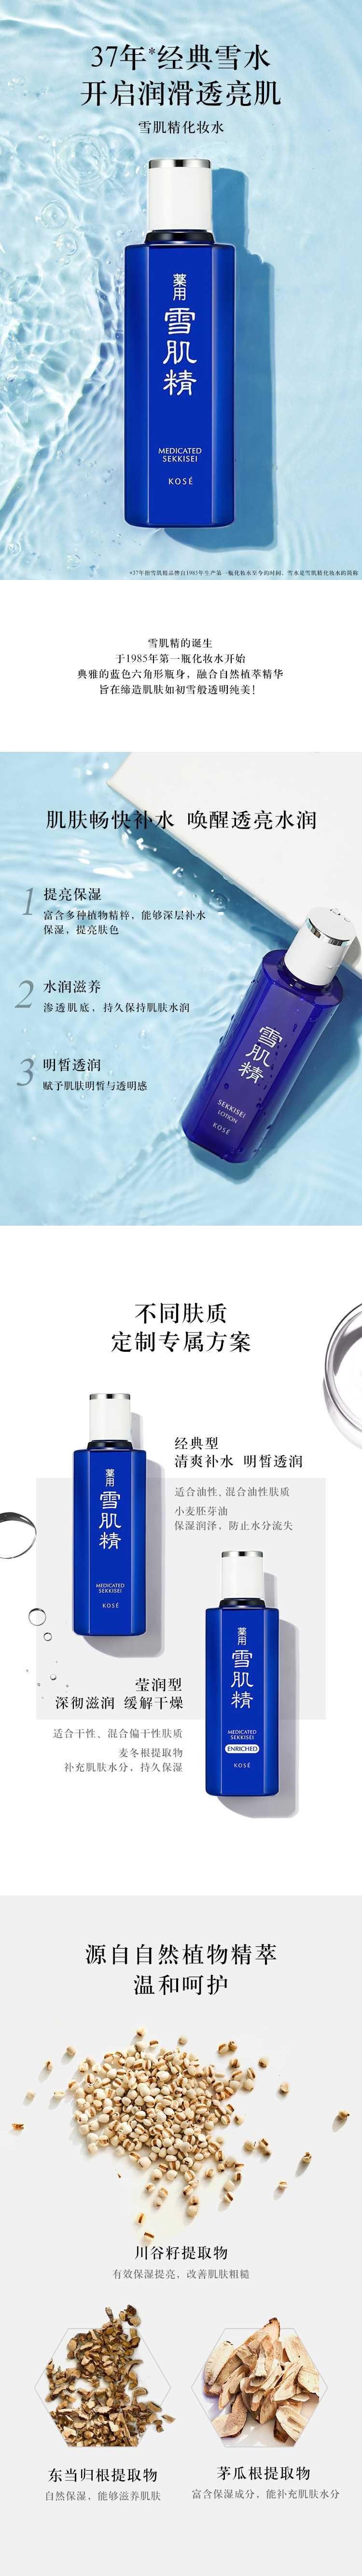 【日本直效郵件】SEKKISEI雪肌精 藥用提亮補水保濕美化妝水200ml 滋潤型